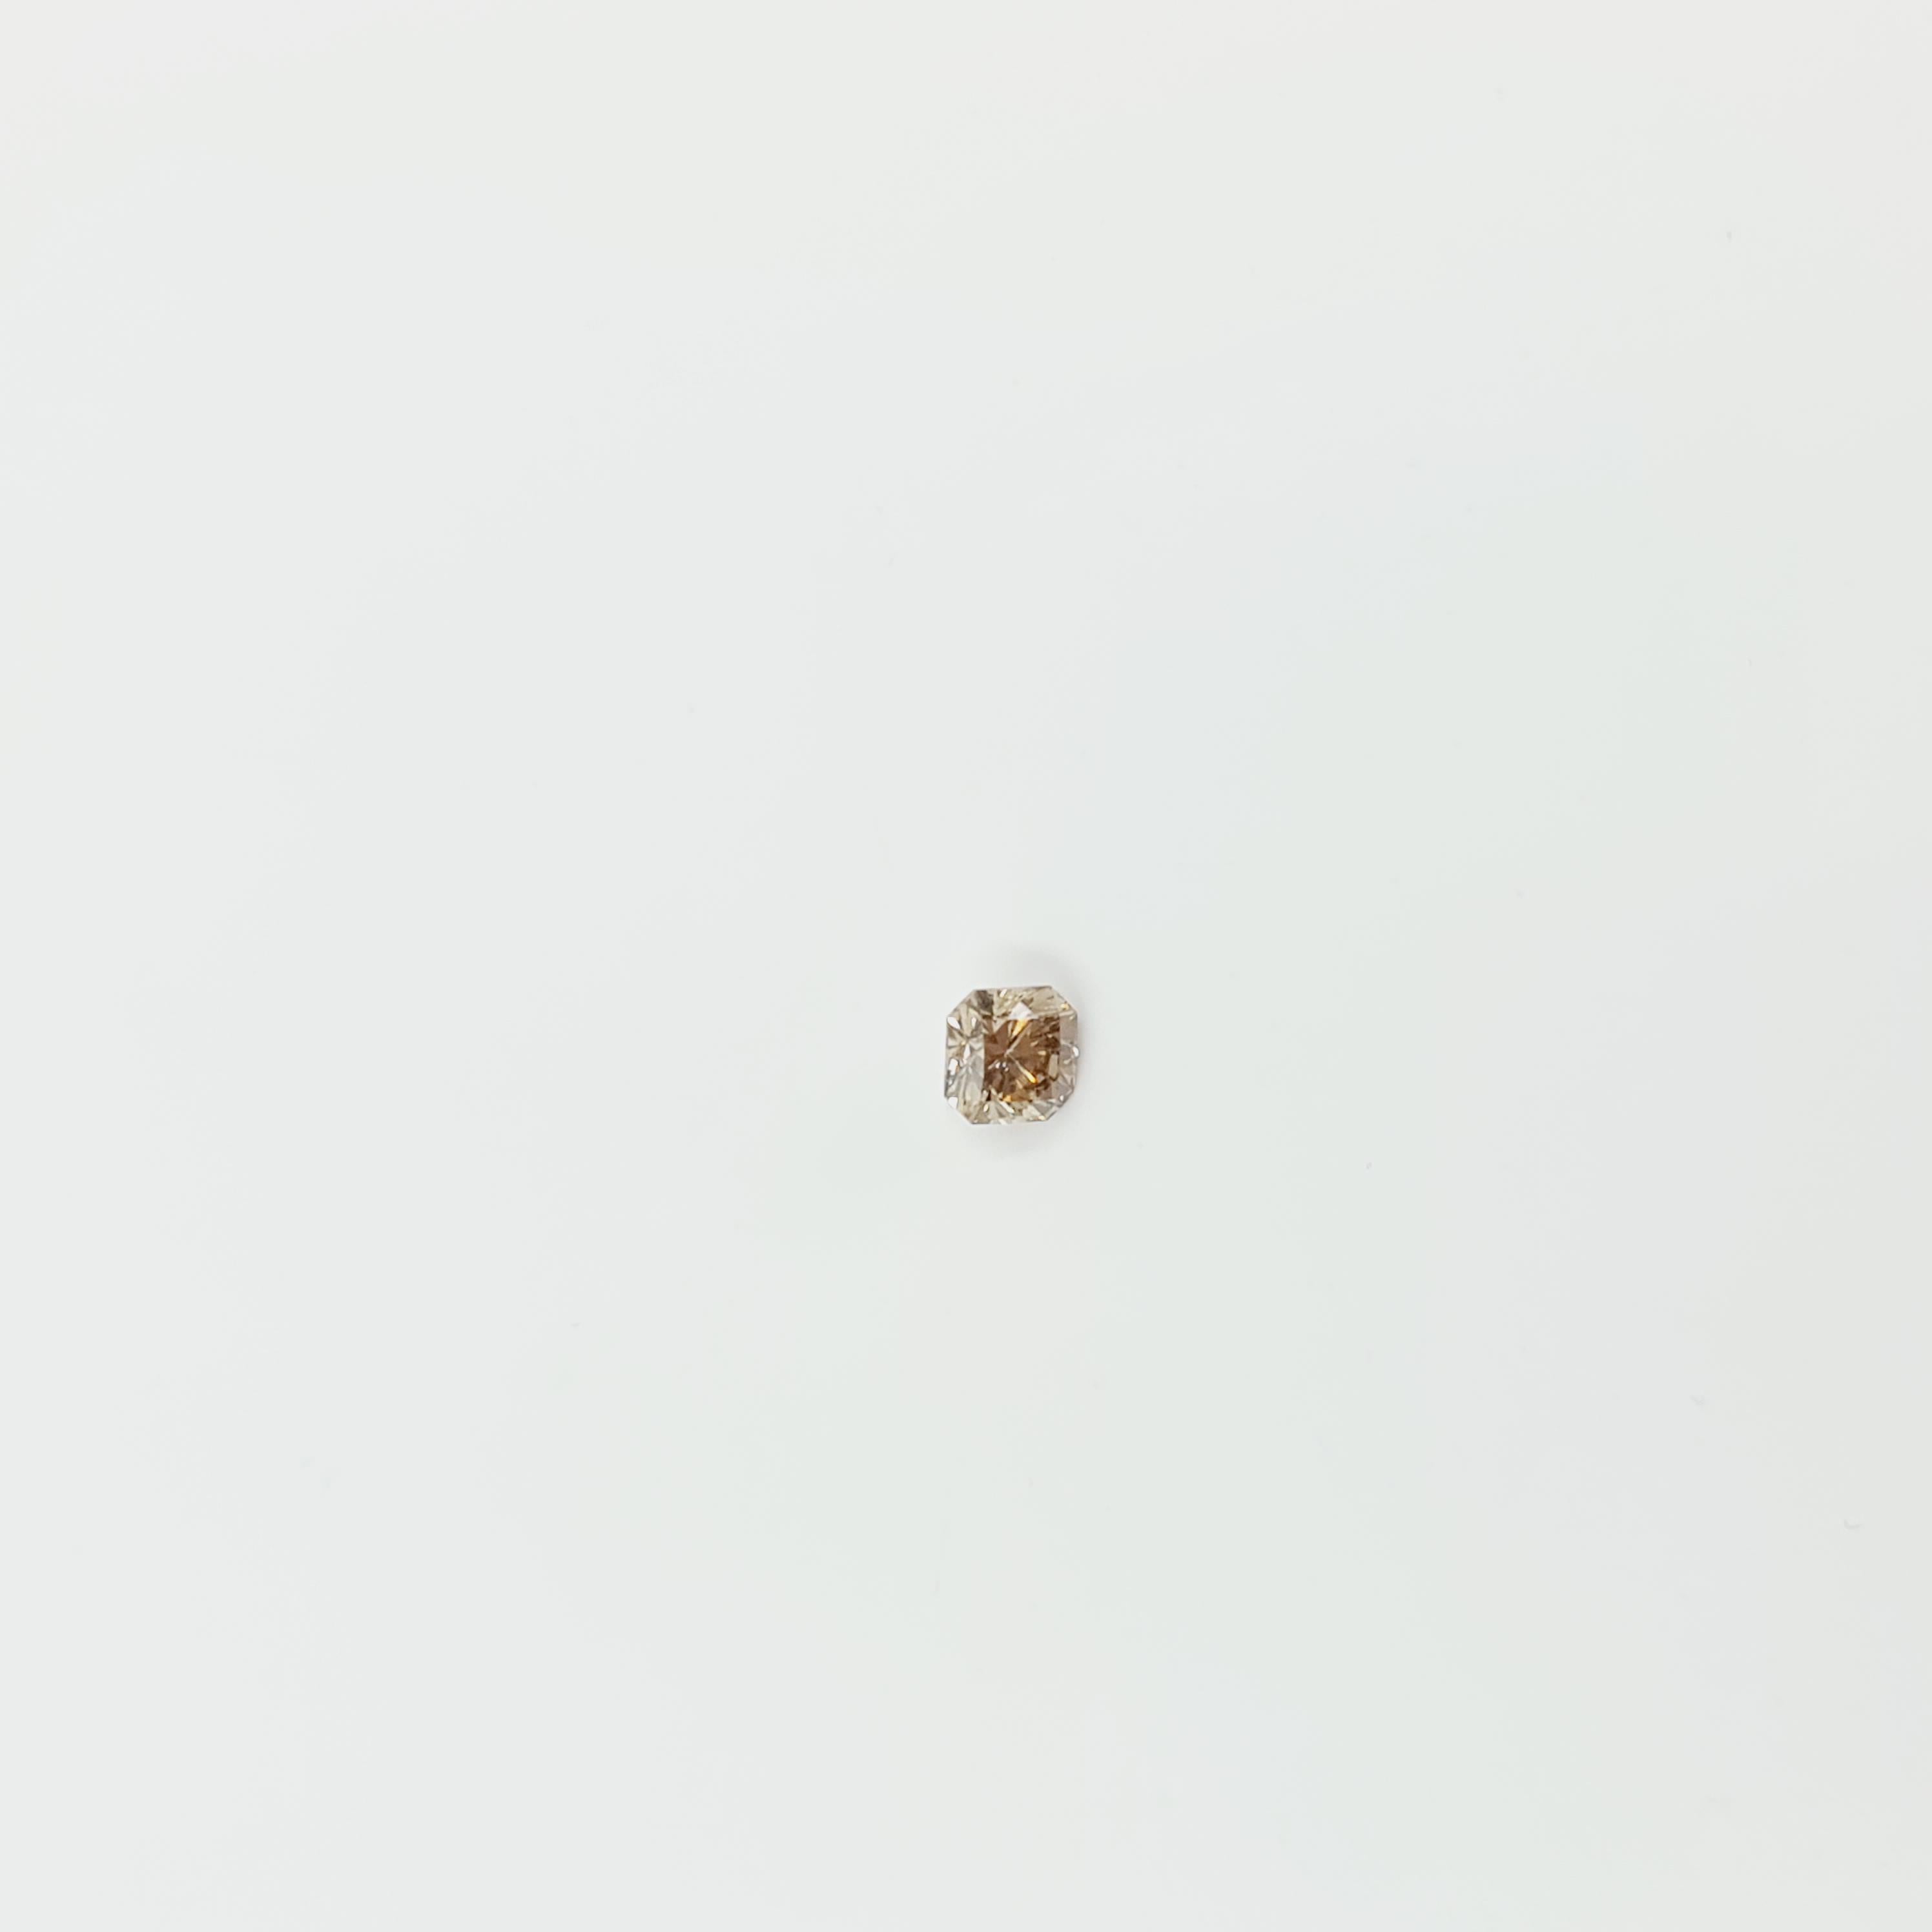 Moderne Diamant certifié GIA de couleur Brown (sans reflet) 0,47 carat VS2 